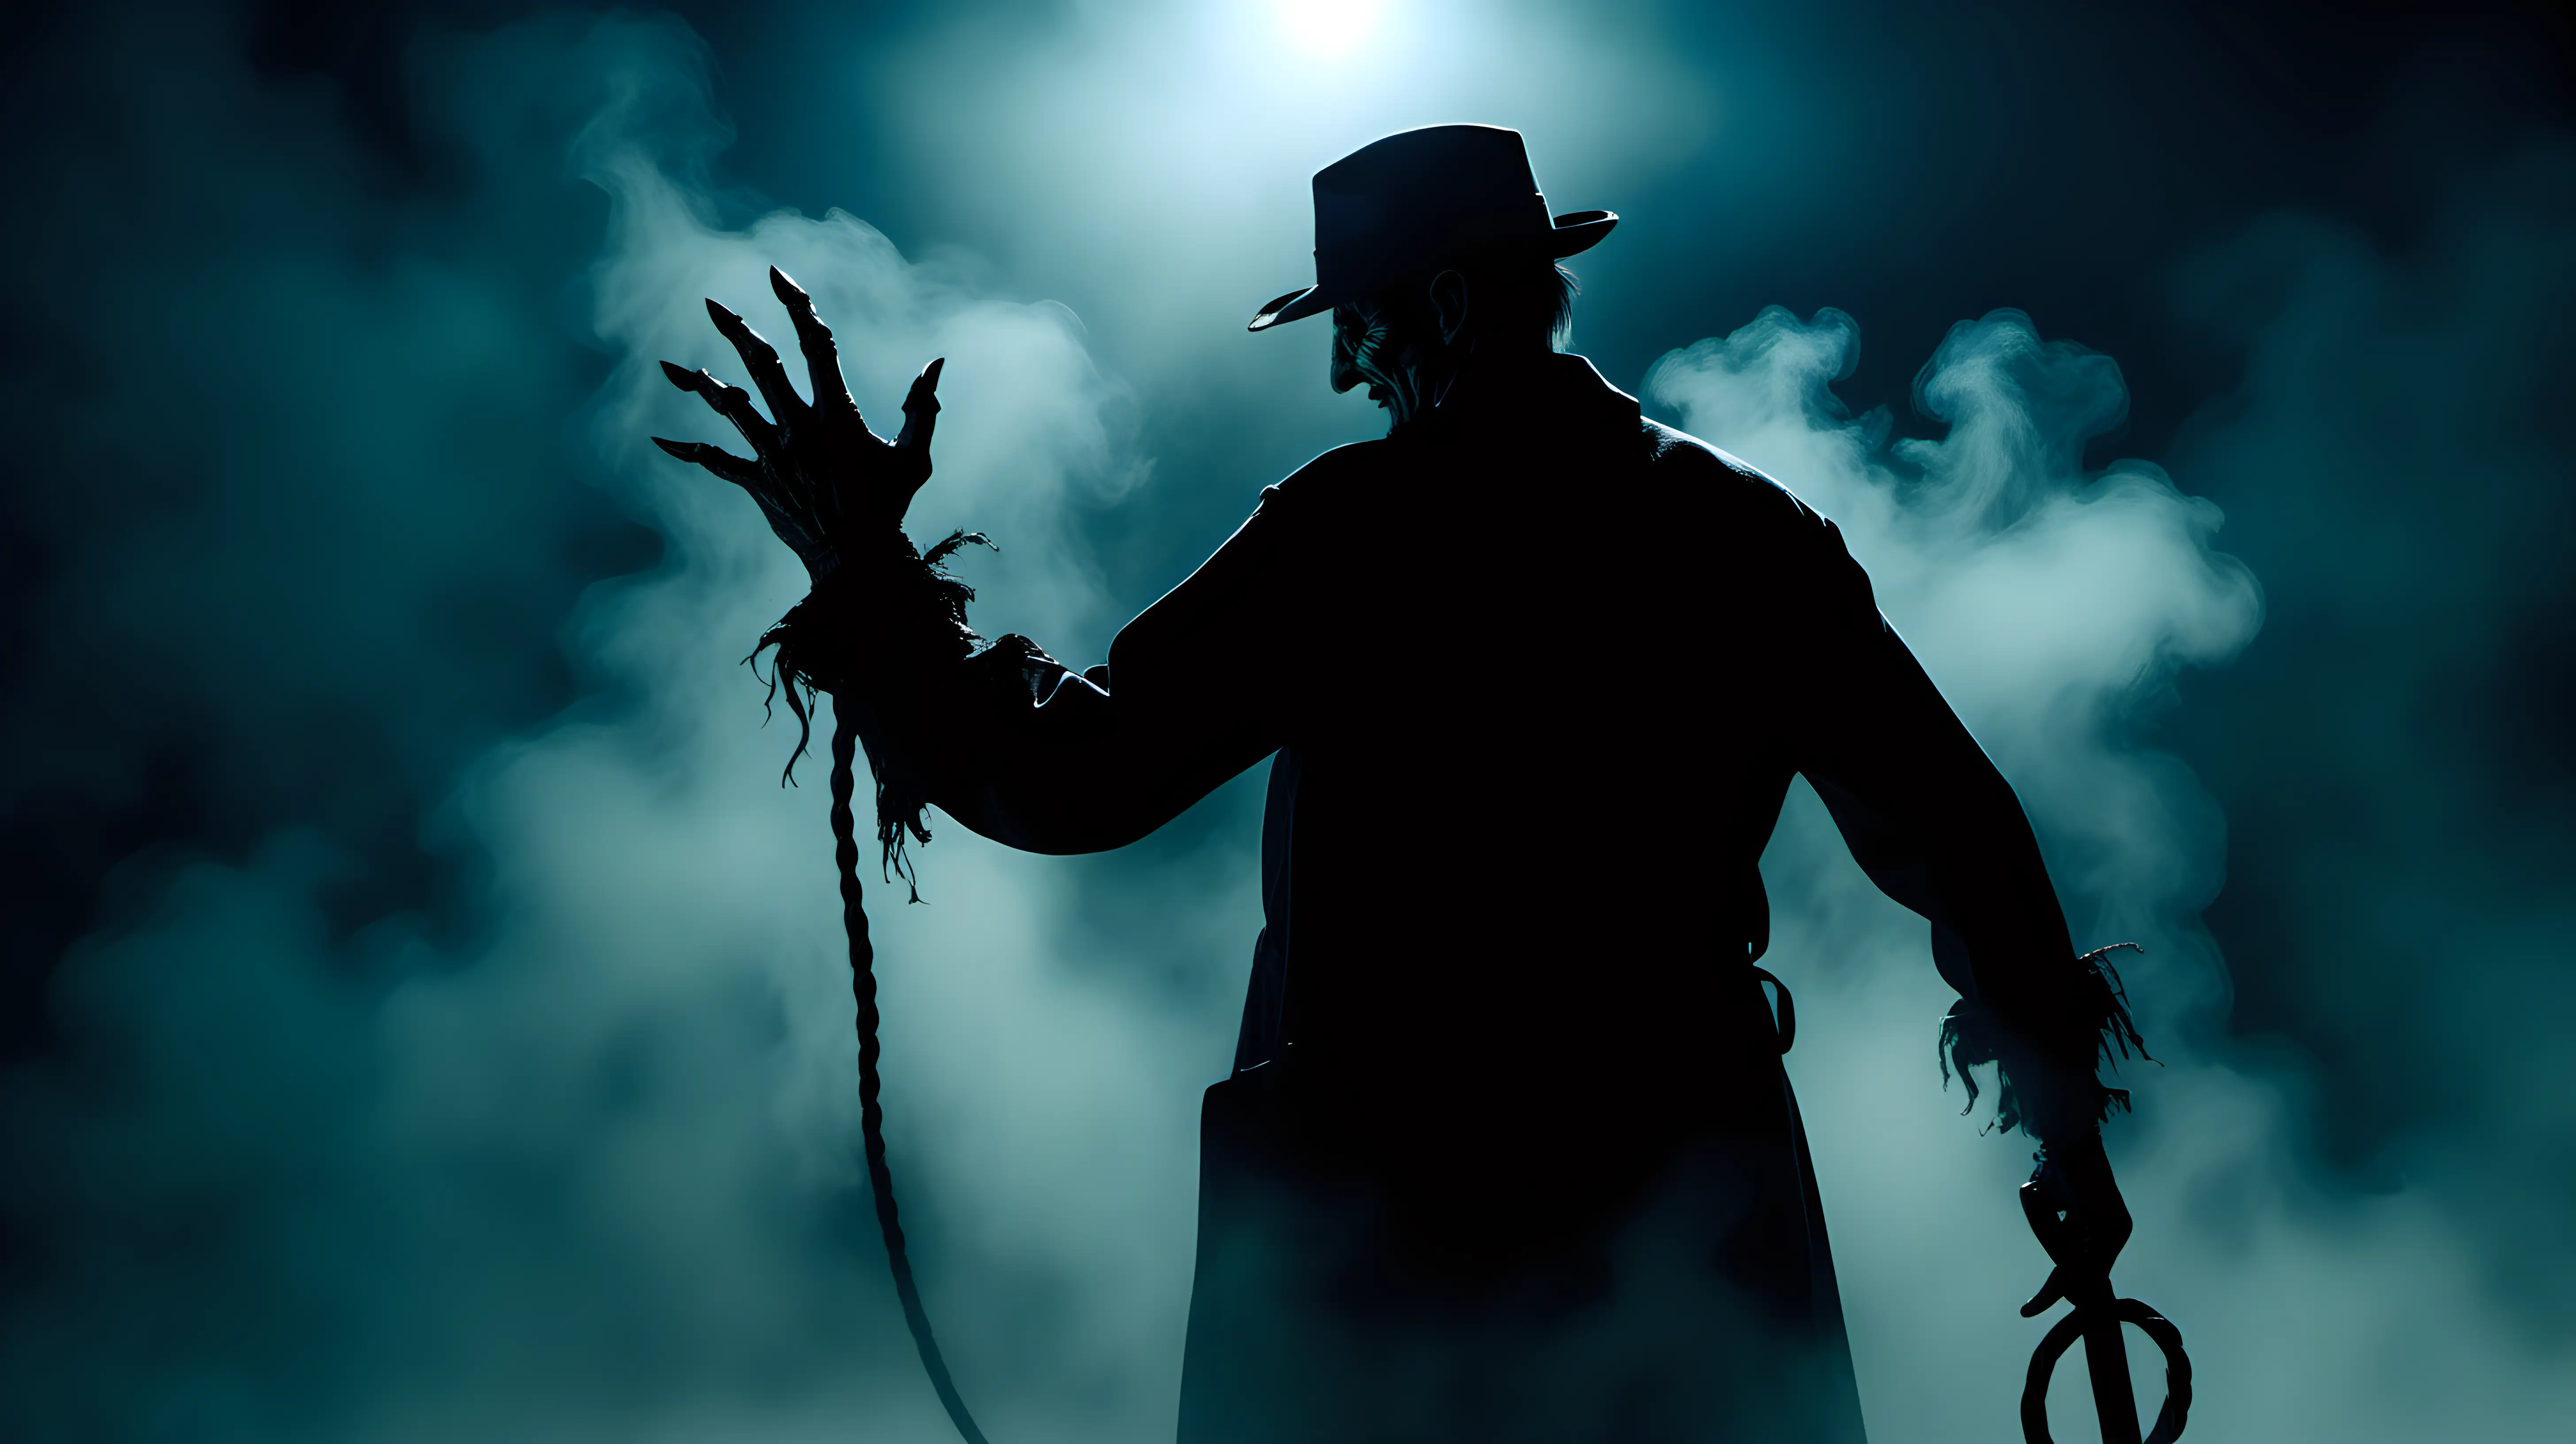 Sinister Freddy Krueger Noir Scene with Whipped Menace